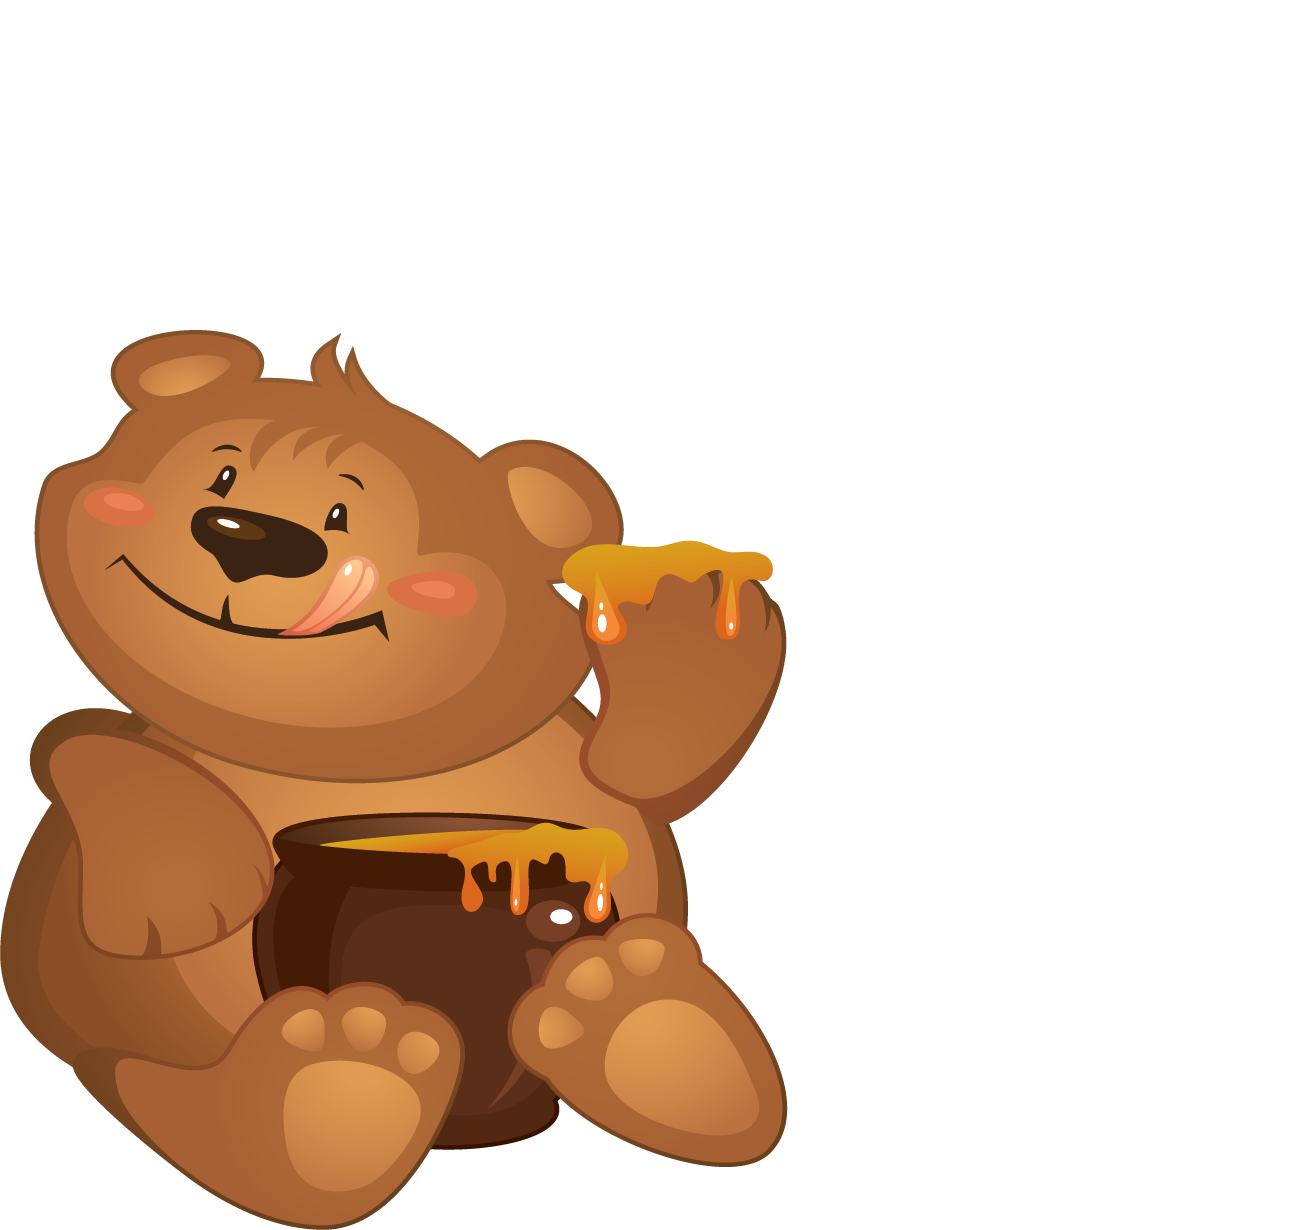 Мультяшные медведи. Медвежонок с бочонком меда. Медведь с медом. Мишка мультяшный. Медведя пчела мед